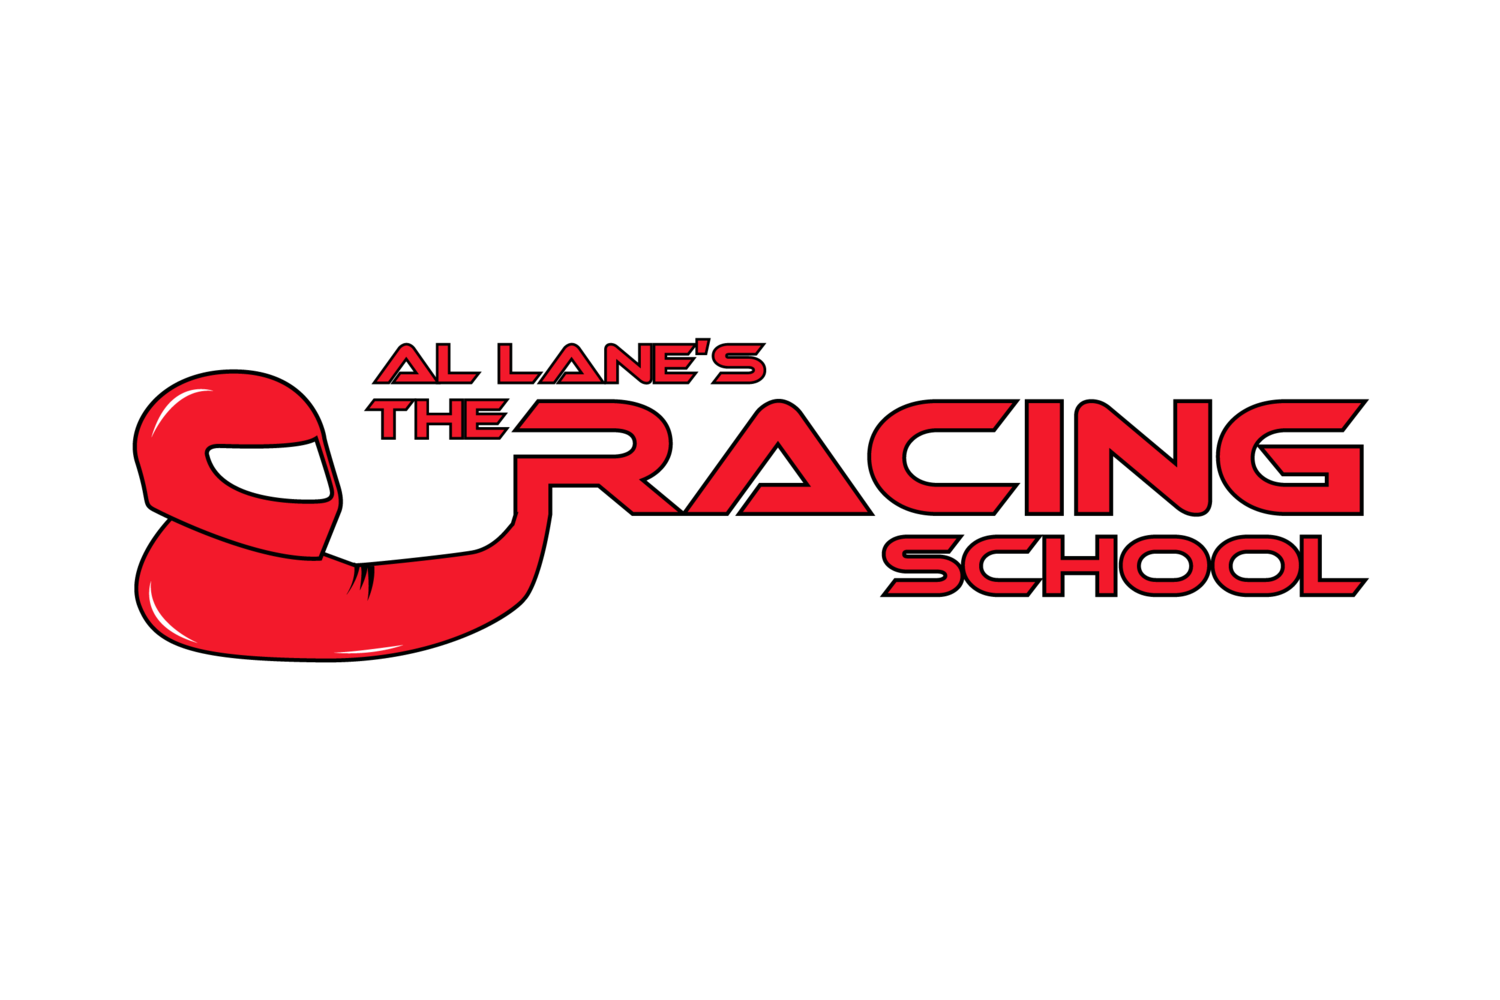 Al Lane's The Racing School